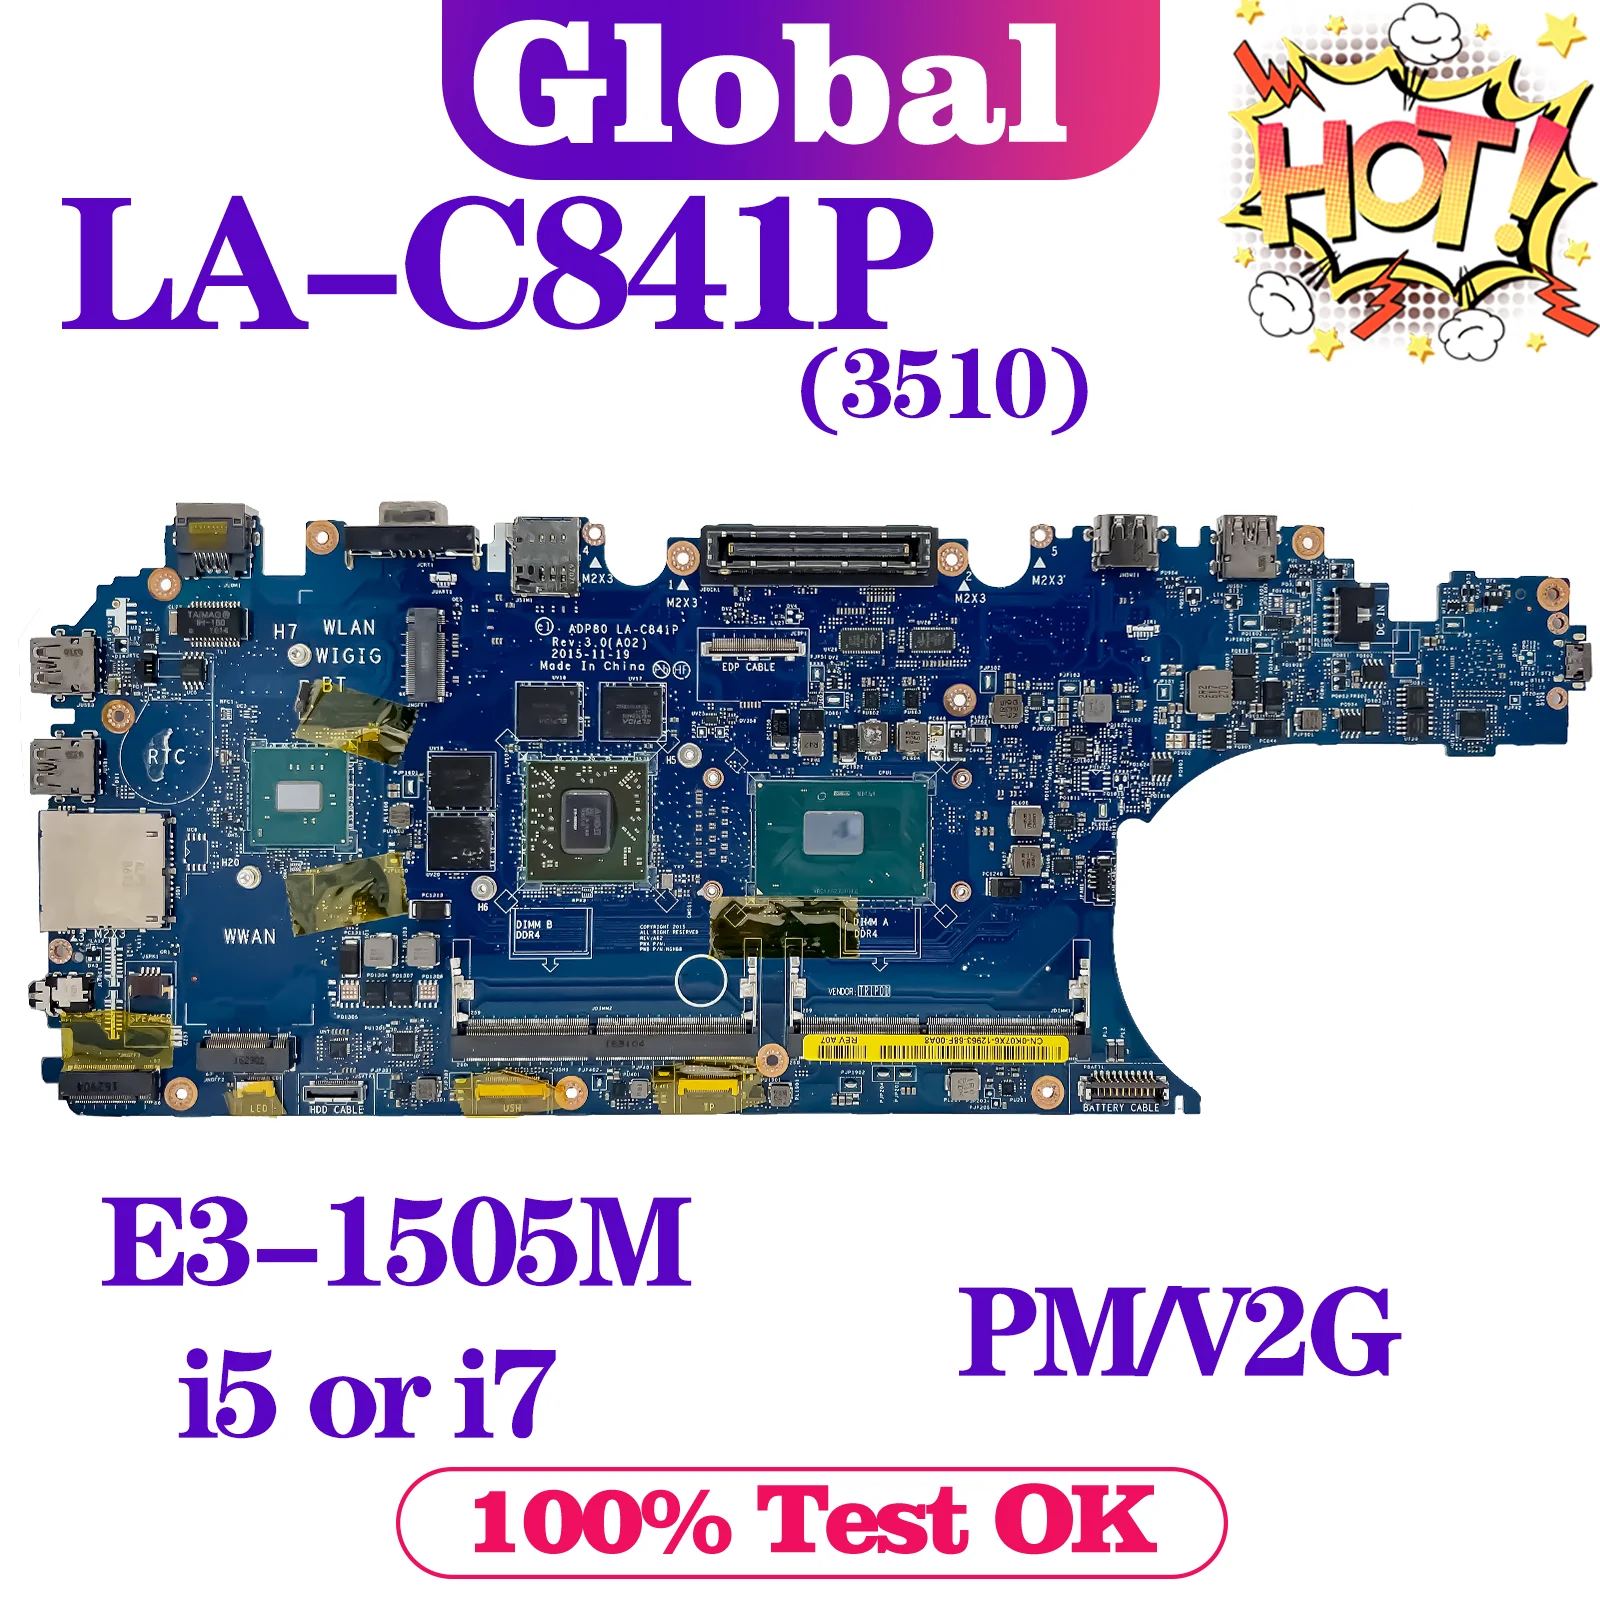 

KEFU LA-C841P Mainboard For Dell Precision 15 3510 Laptop Motherboard E3-1505M i5 i7 6th Gen V2G DDR4